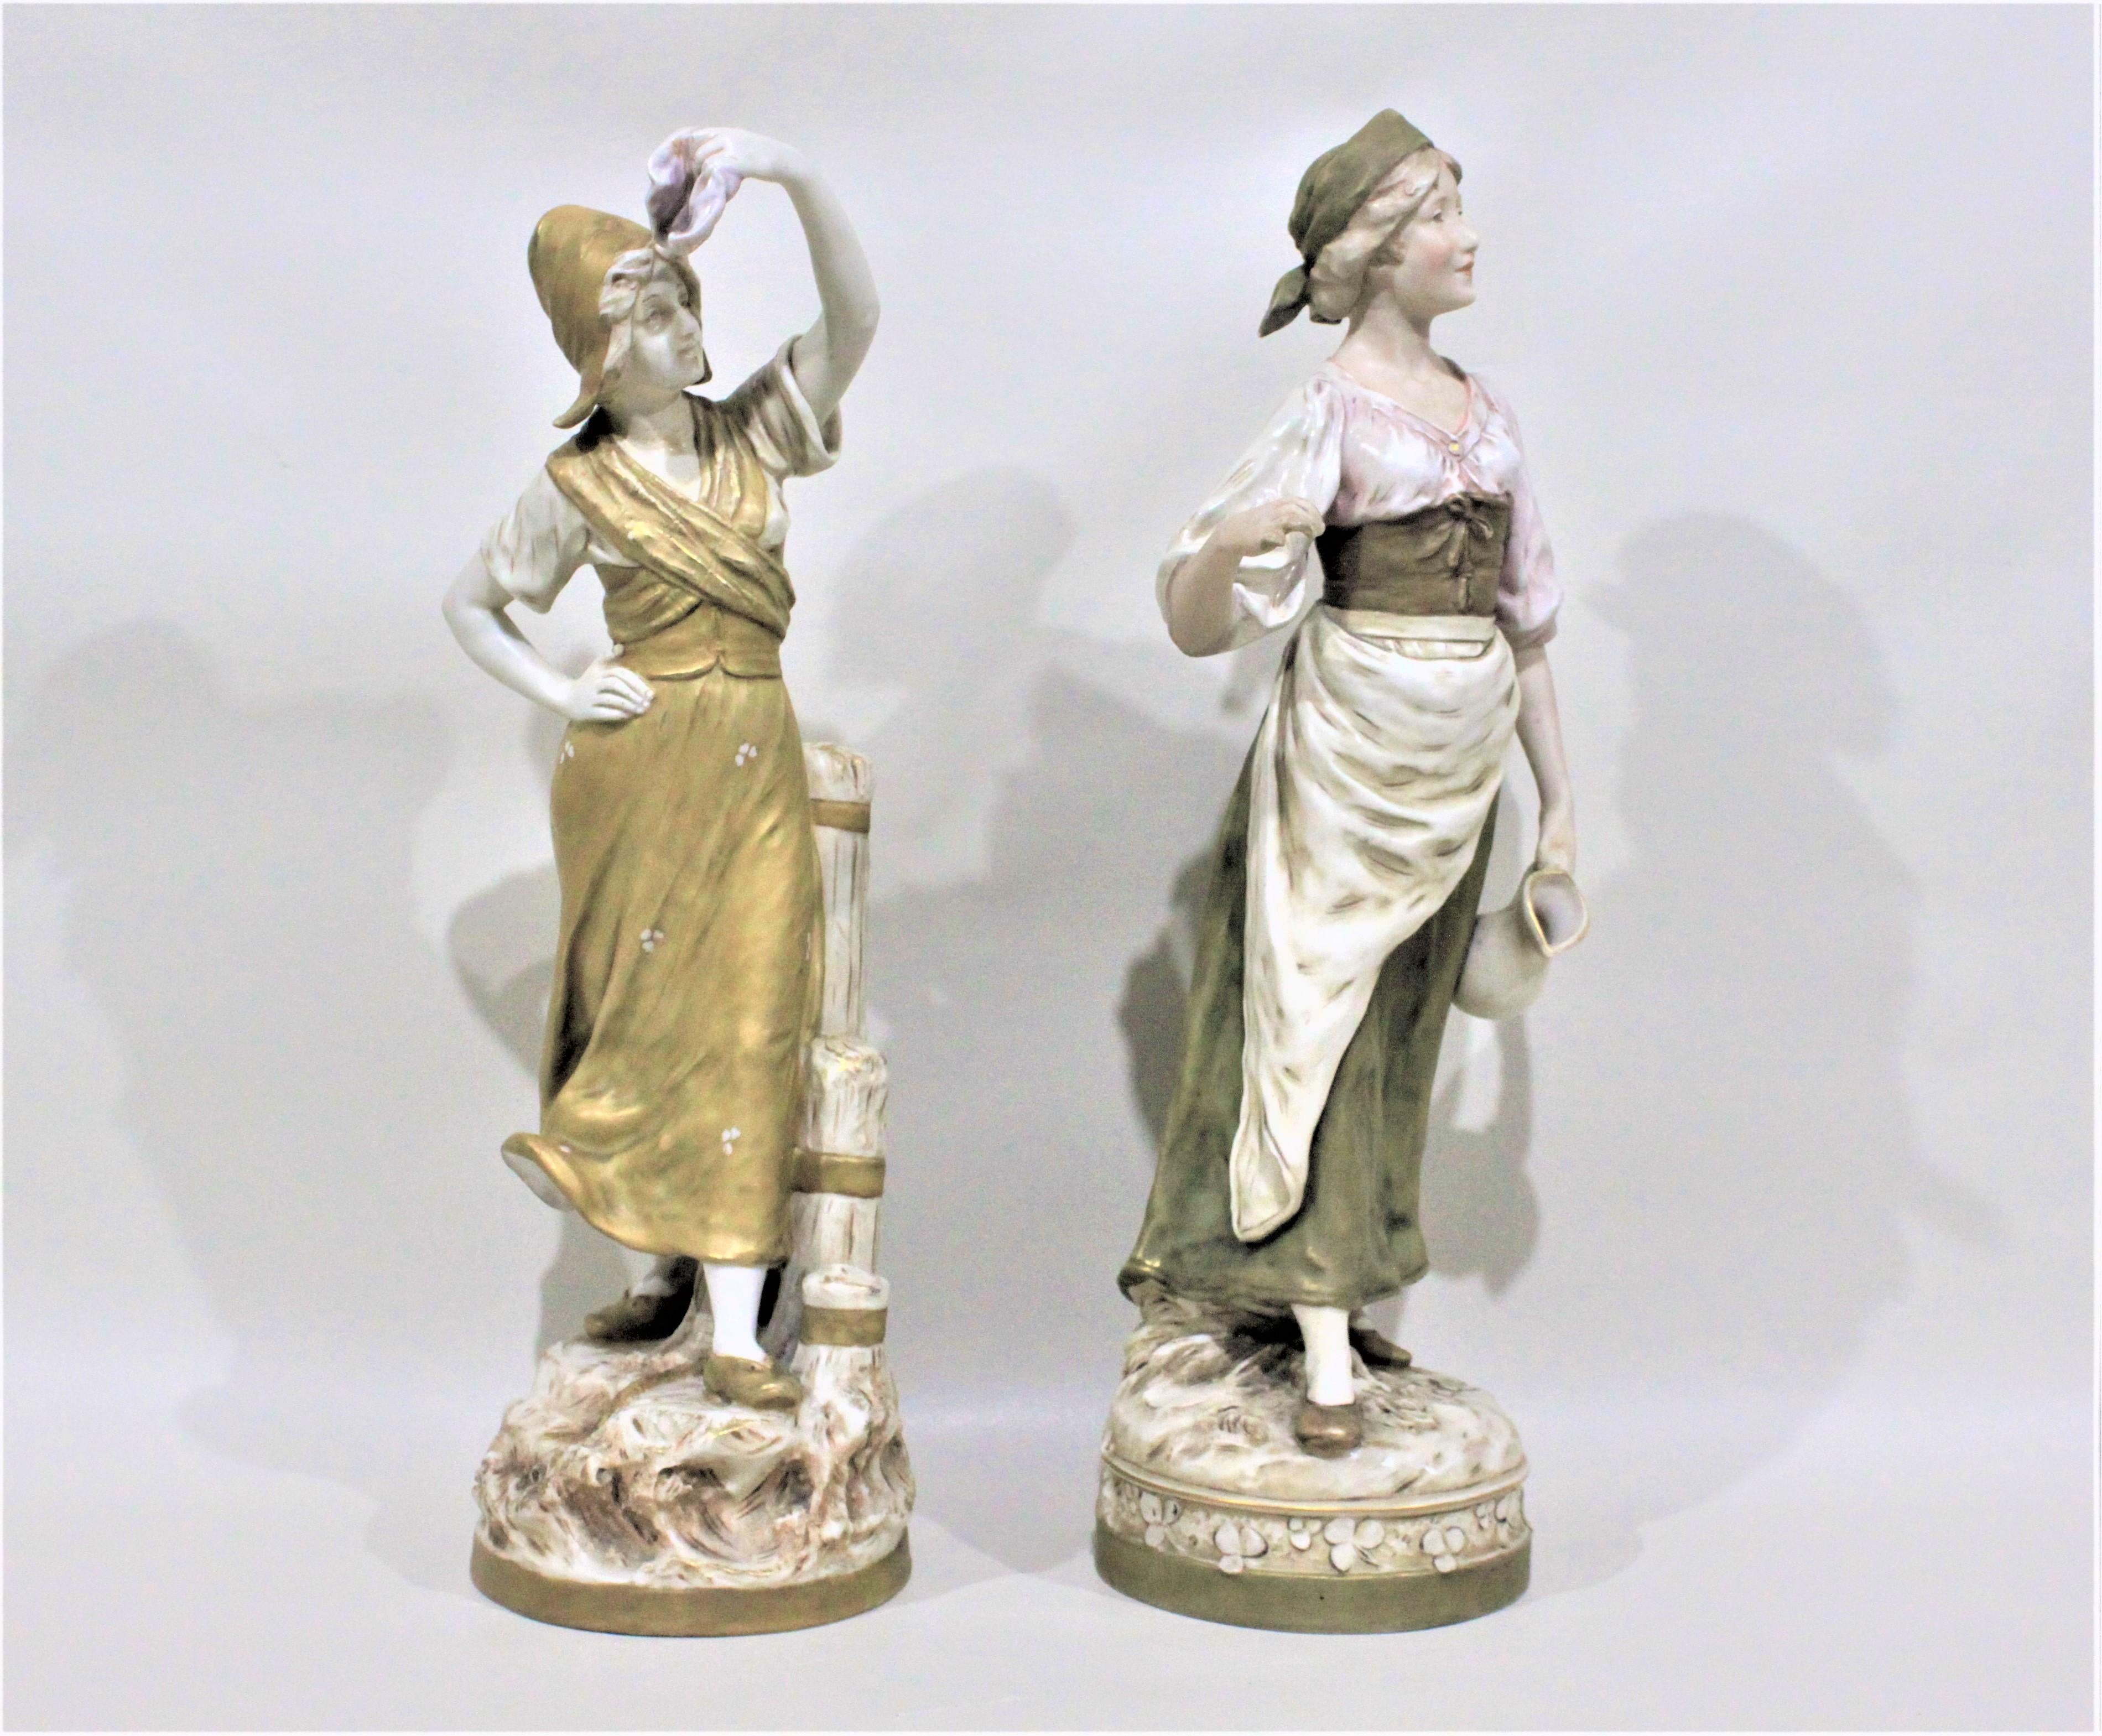 Cette paire de figurines en porcelaine a été fabriquée par Royal Dux aux alentours de 1900 dans la période et le style de l'Art Nouveau. Les deux figurines sont clairement marquées du triangle de signature Royal Dux et chacune mesure environ 17